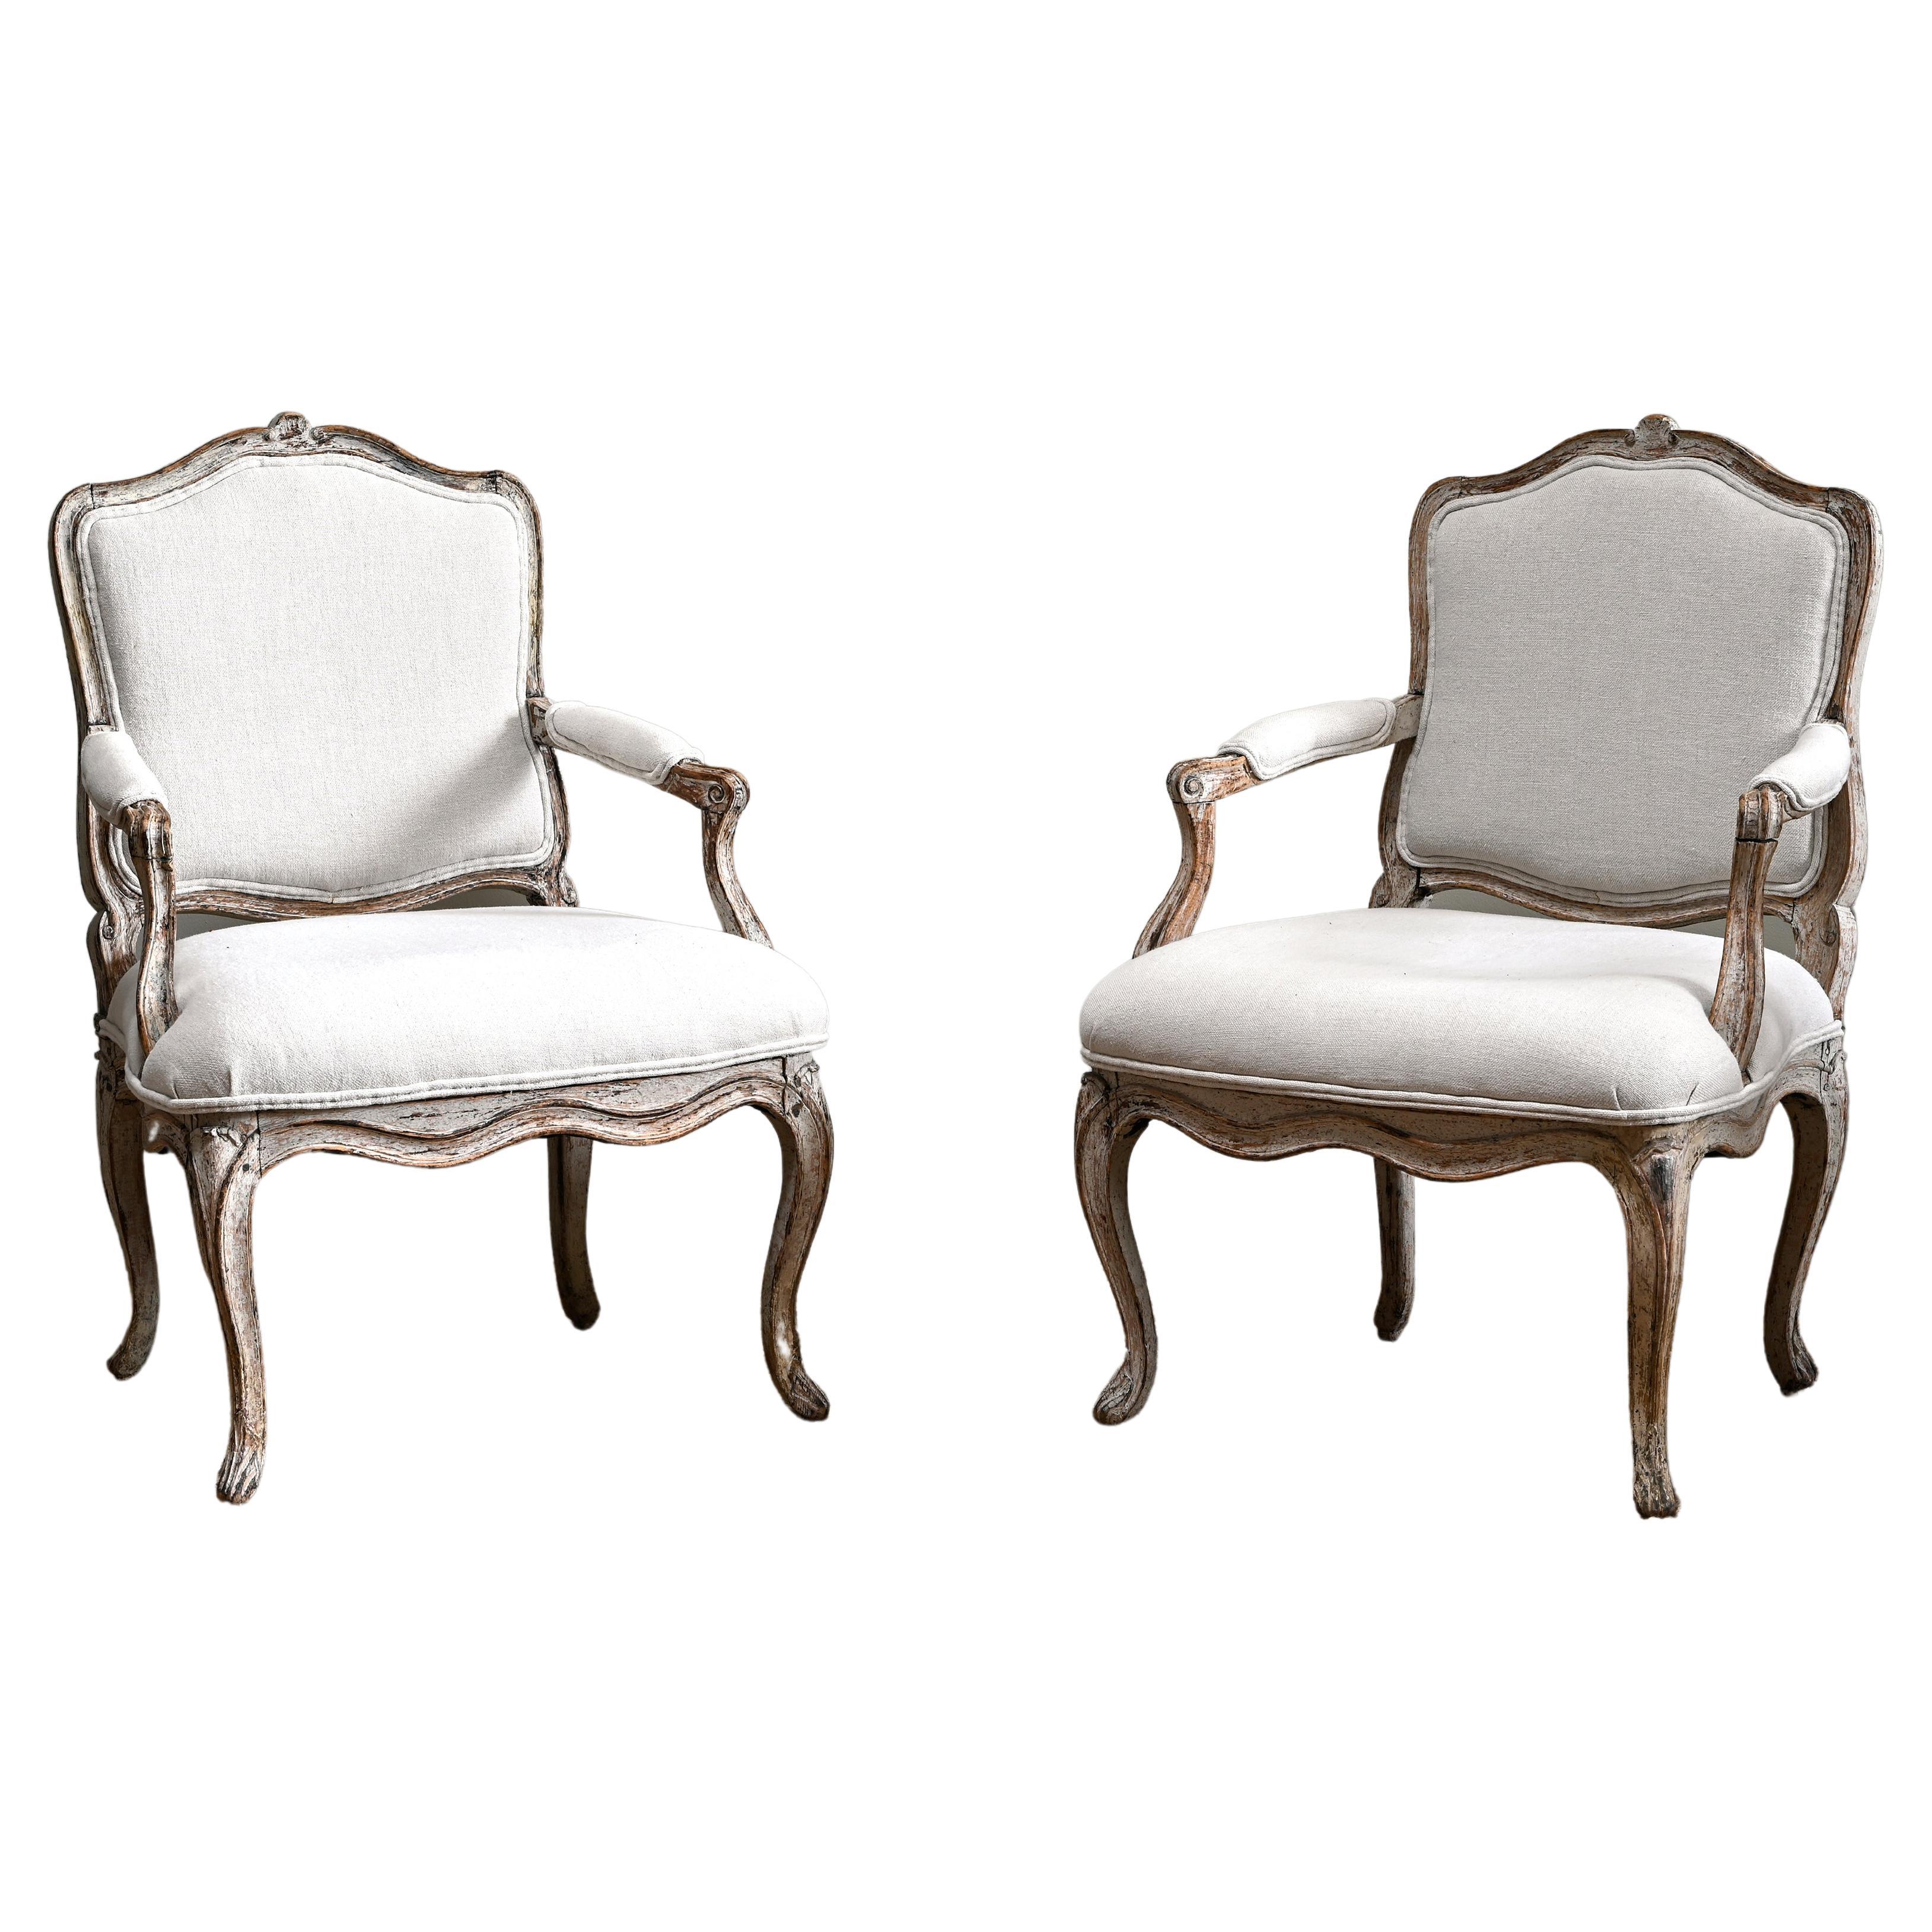 Paire de fauteuils rococo français du 18ème siècle